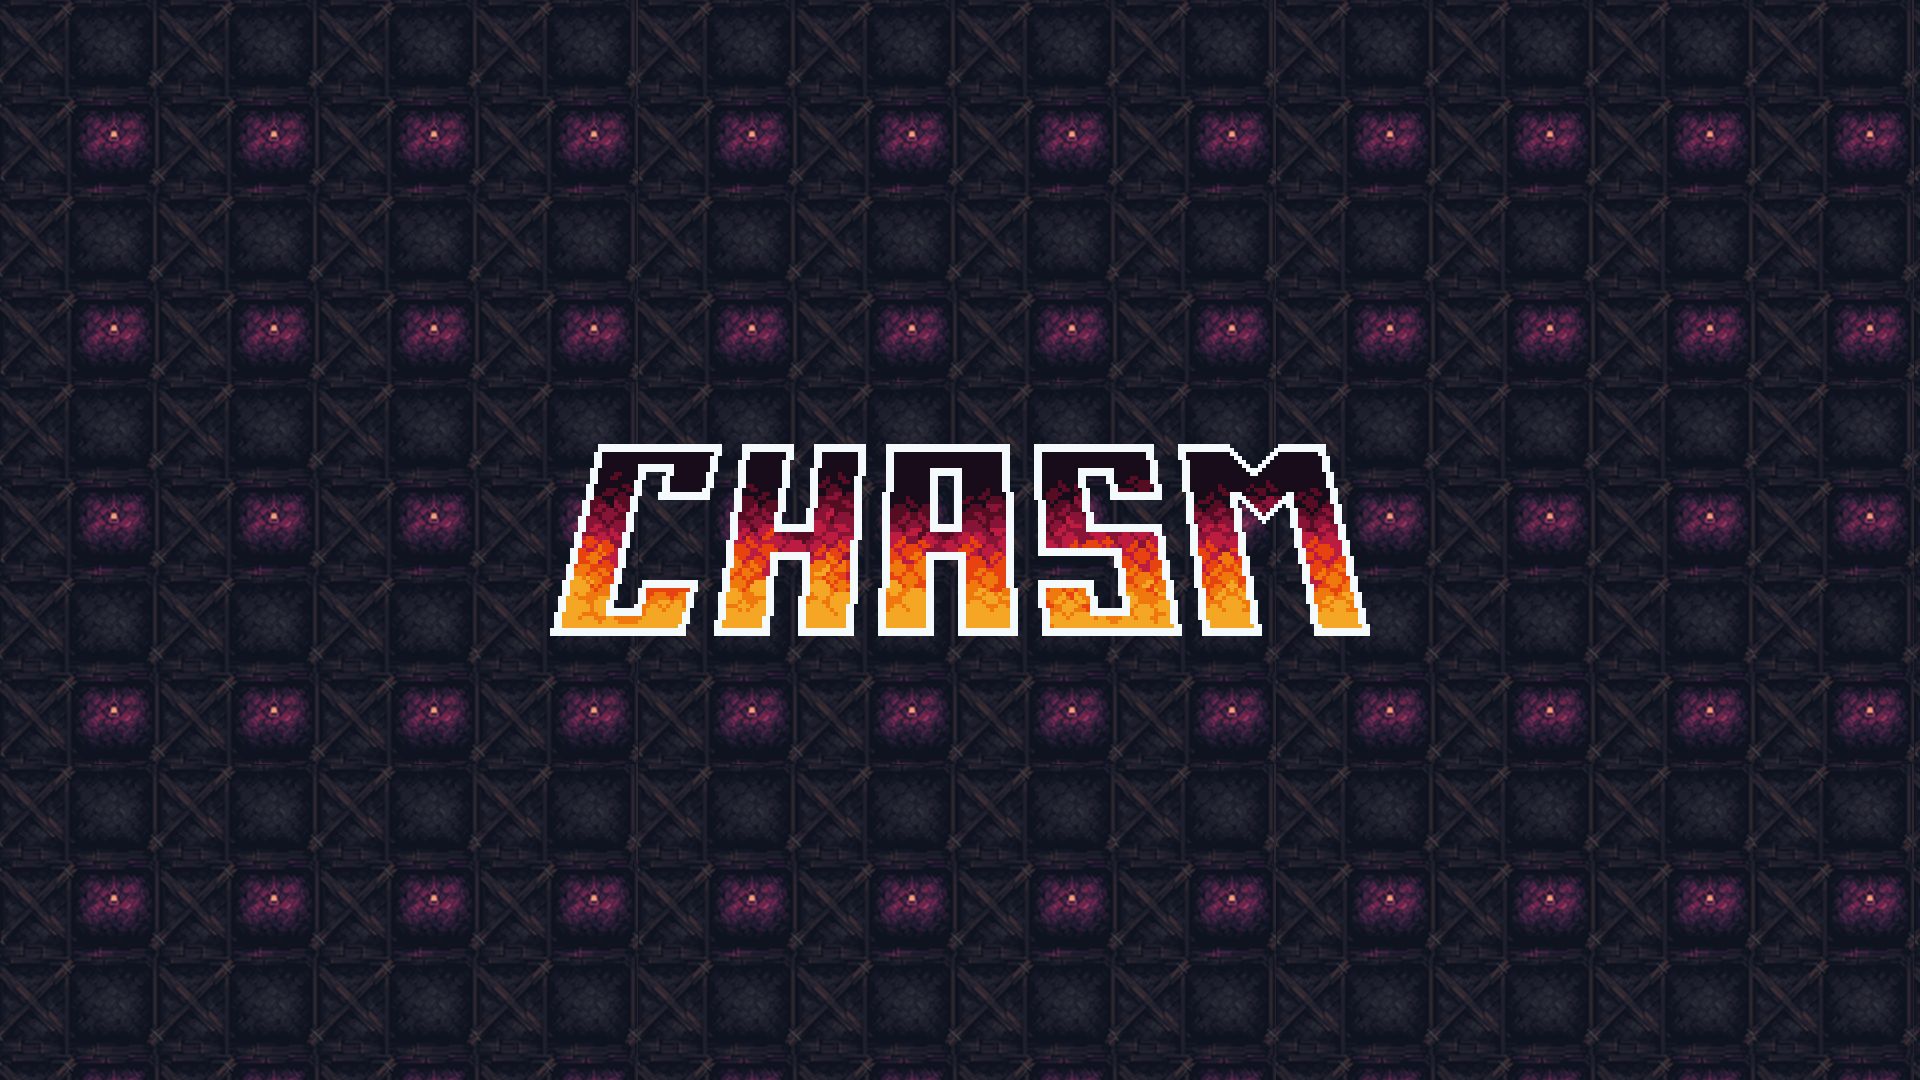 Presto arriverà un importante aggiornamento per Chasm su Nintendo Switch